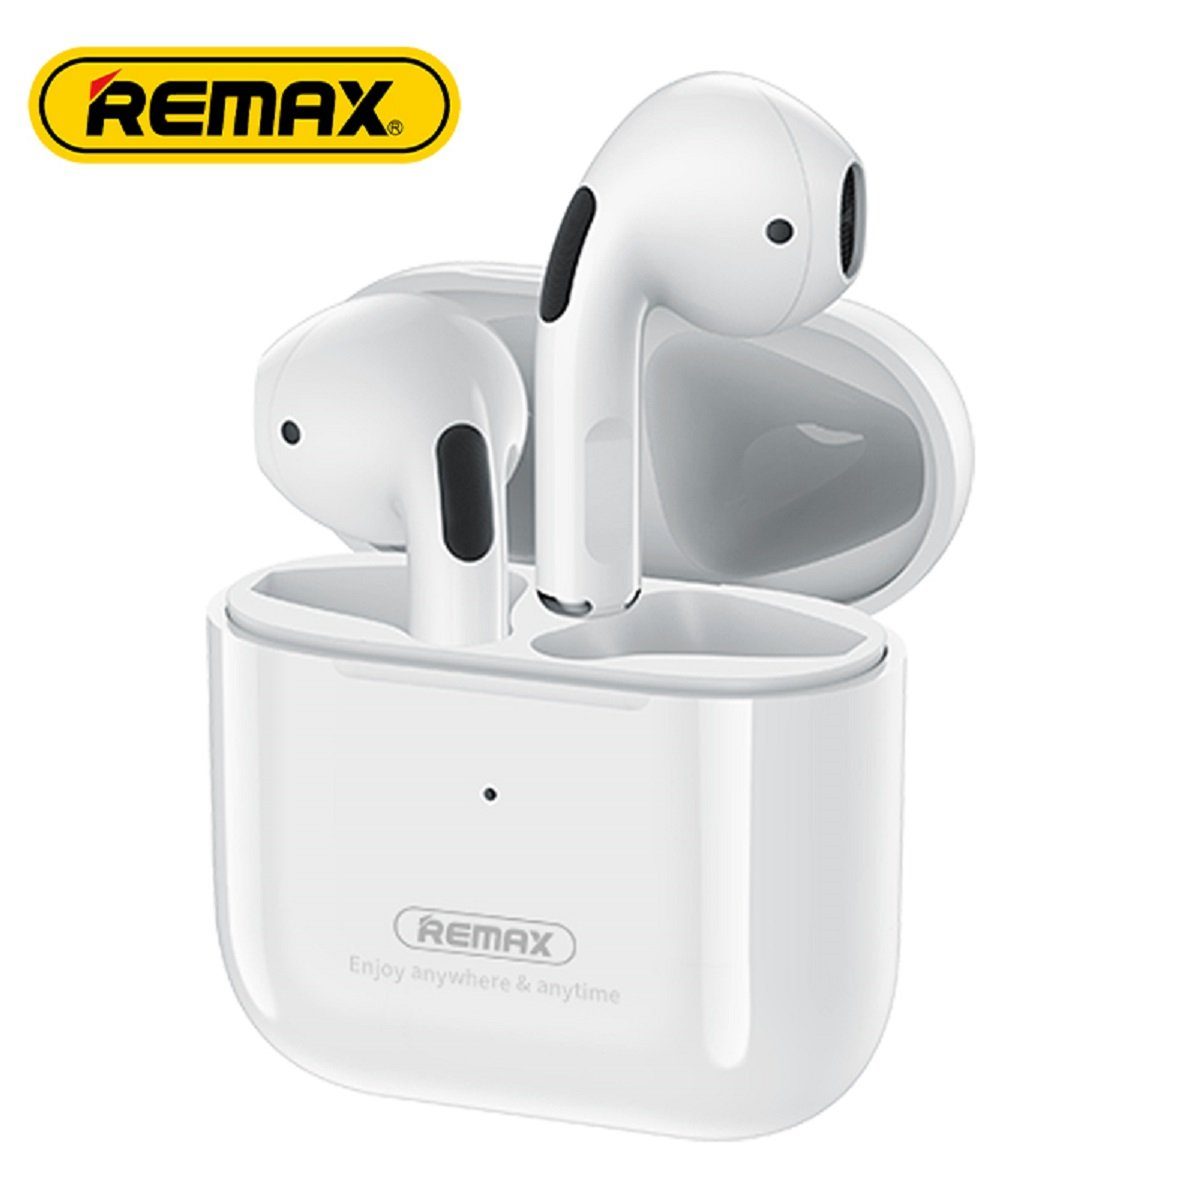 Remax TWS-10i 5.0 Kopfhörer True Wireless mit Ladecase für Smartphone (Weiß) Bluetooth-Kopfhörer (Wireless, True Wireless, TWS, bluetooth, wasserdicht, Aktive Geräuschunterdrückung)